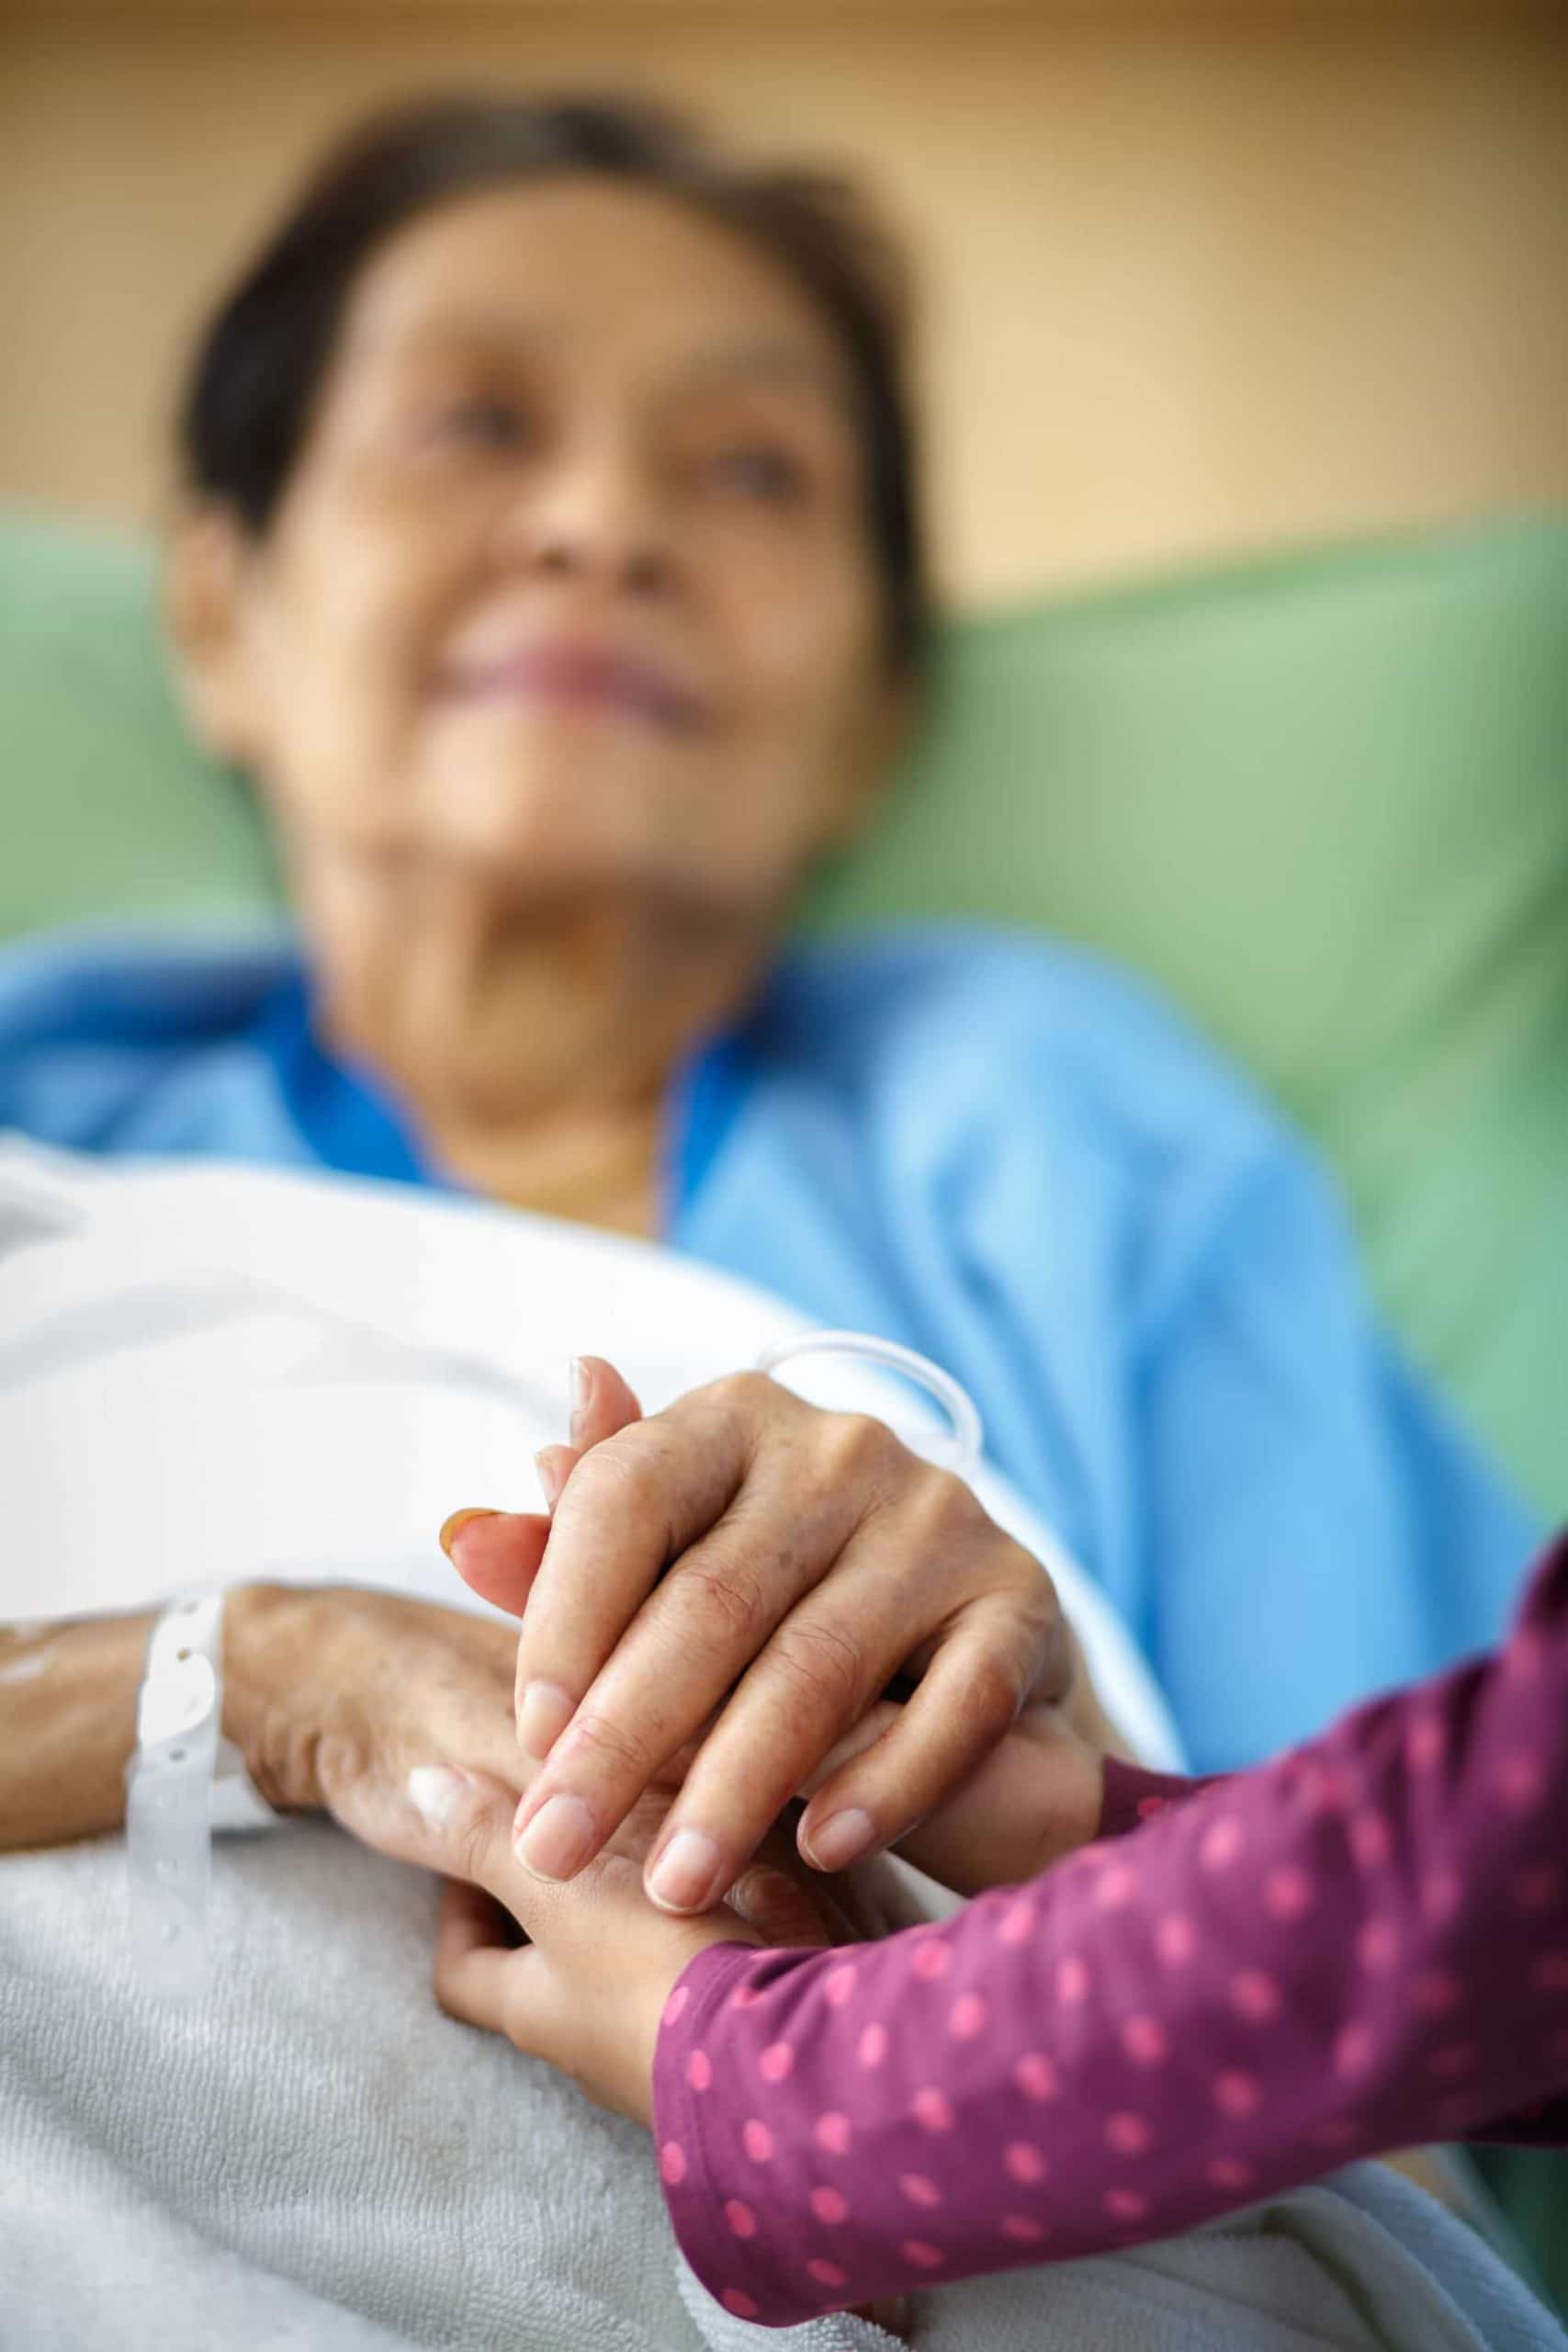 Elder patient holding hands